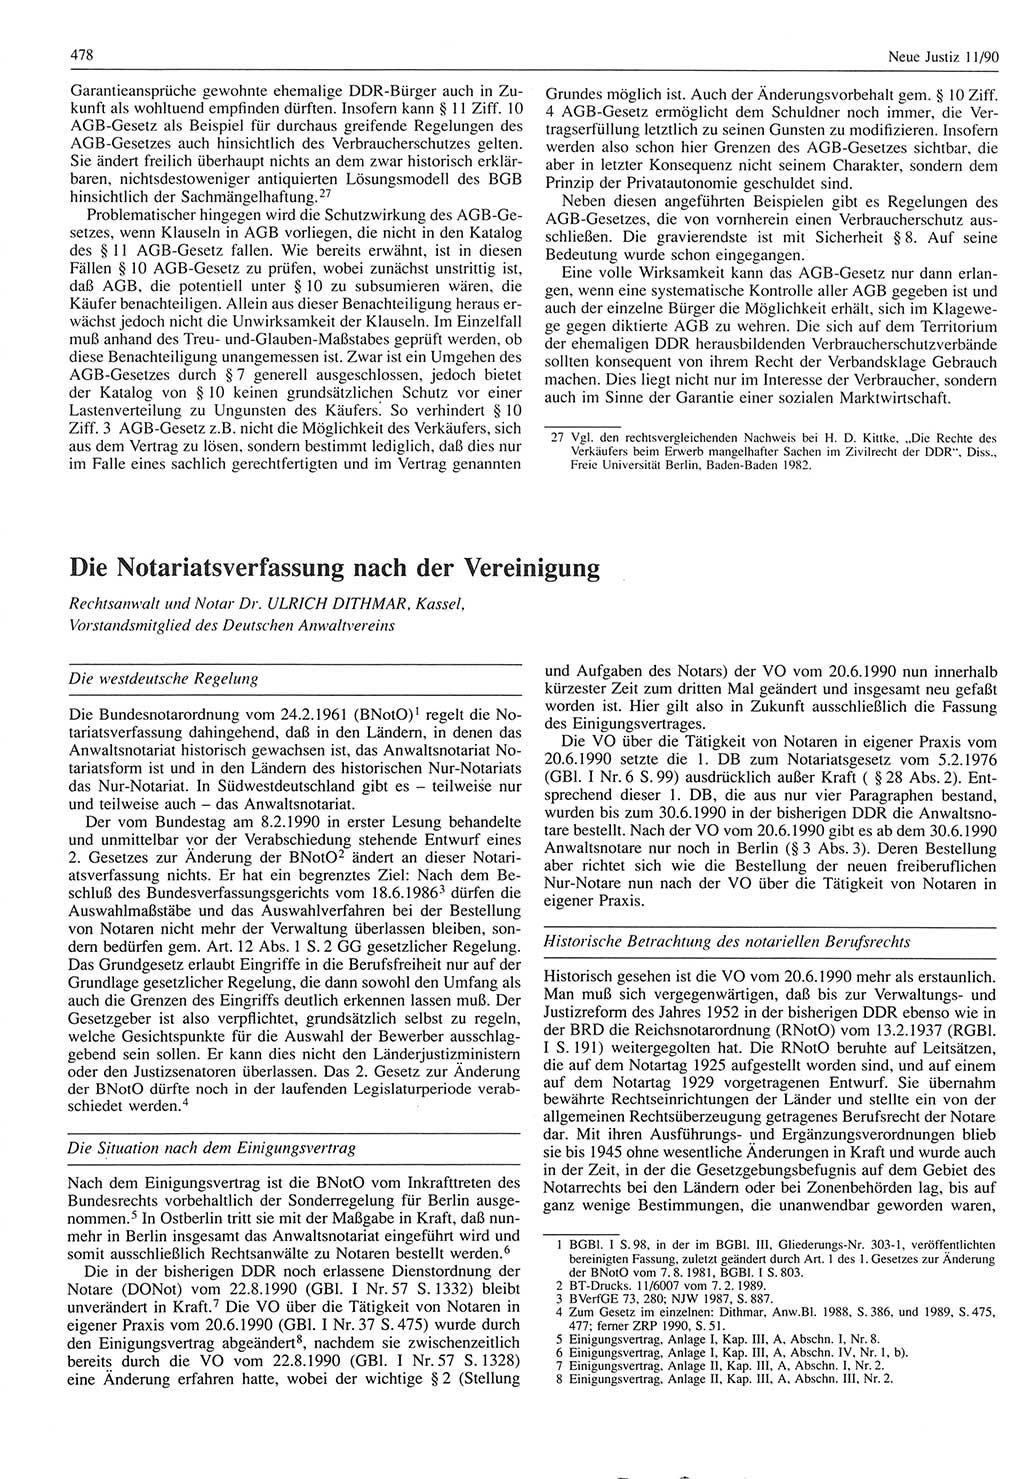 Neue Justiz (NJ), Zeitschrift für Rechtsetzung und Rechtsanwendung [Deutsche Demokratische Republik (DDR)], 44. Jahrgang 1990, Seite 478 (NJ DDR 1990, S. 478)